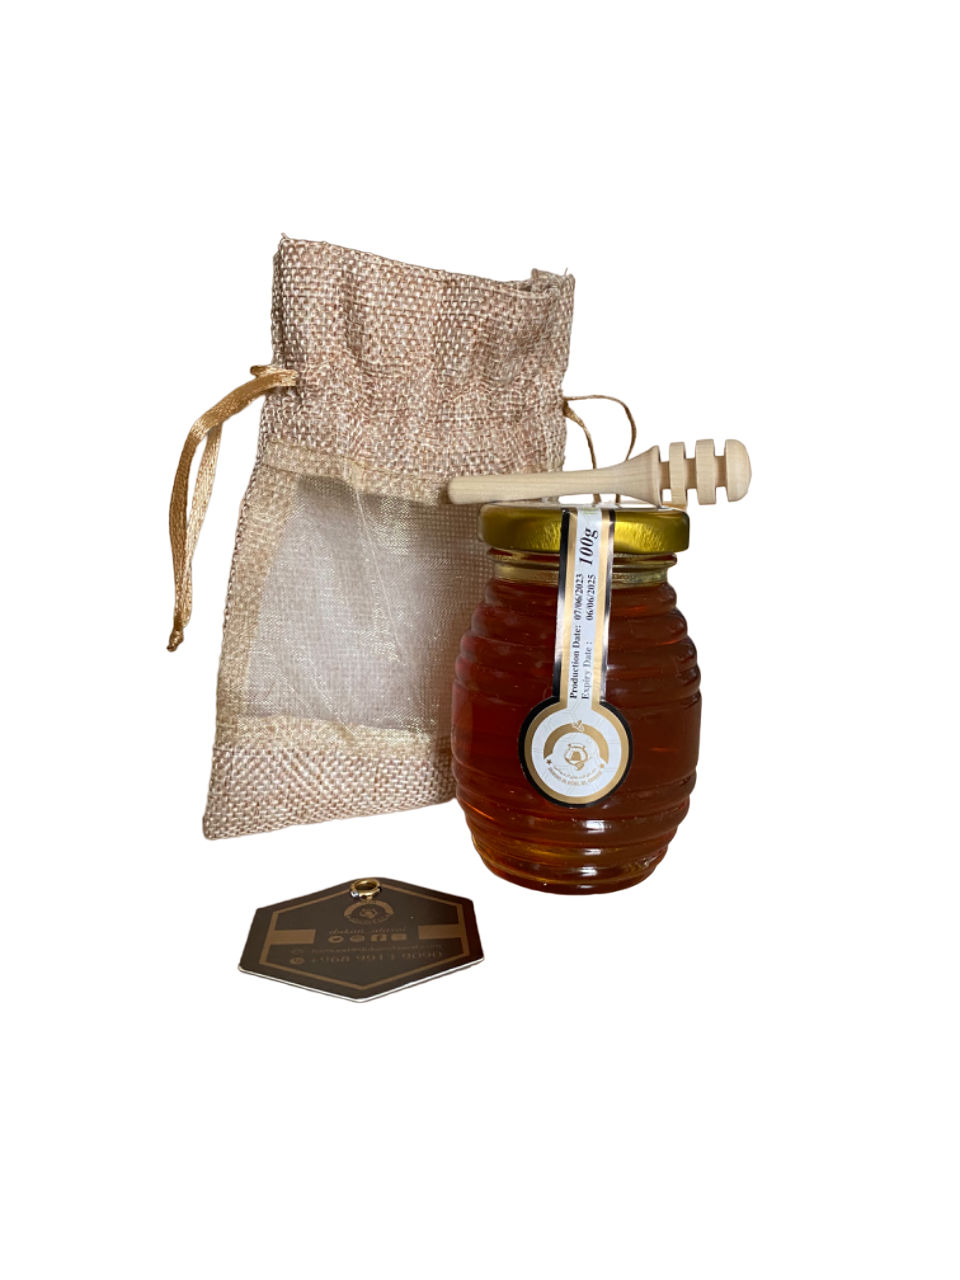 Omanischer Berg-Sidr-Honig – 100 g – عسل العماني الجبلي النادر